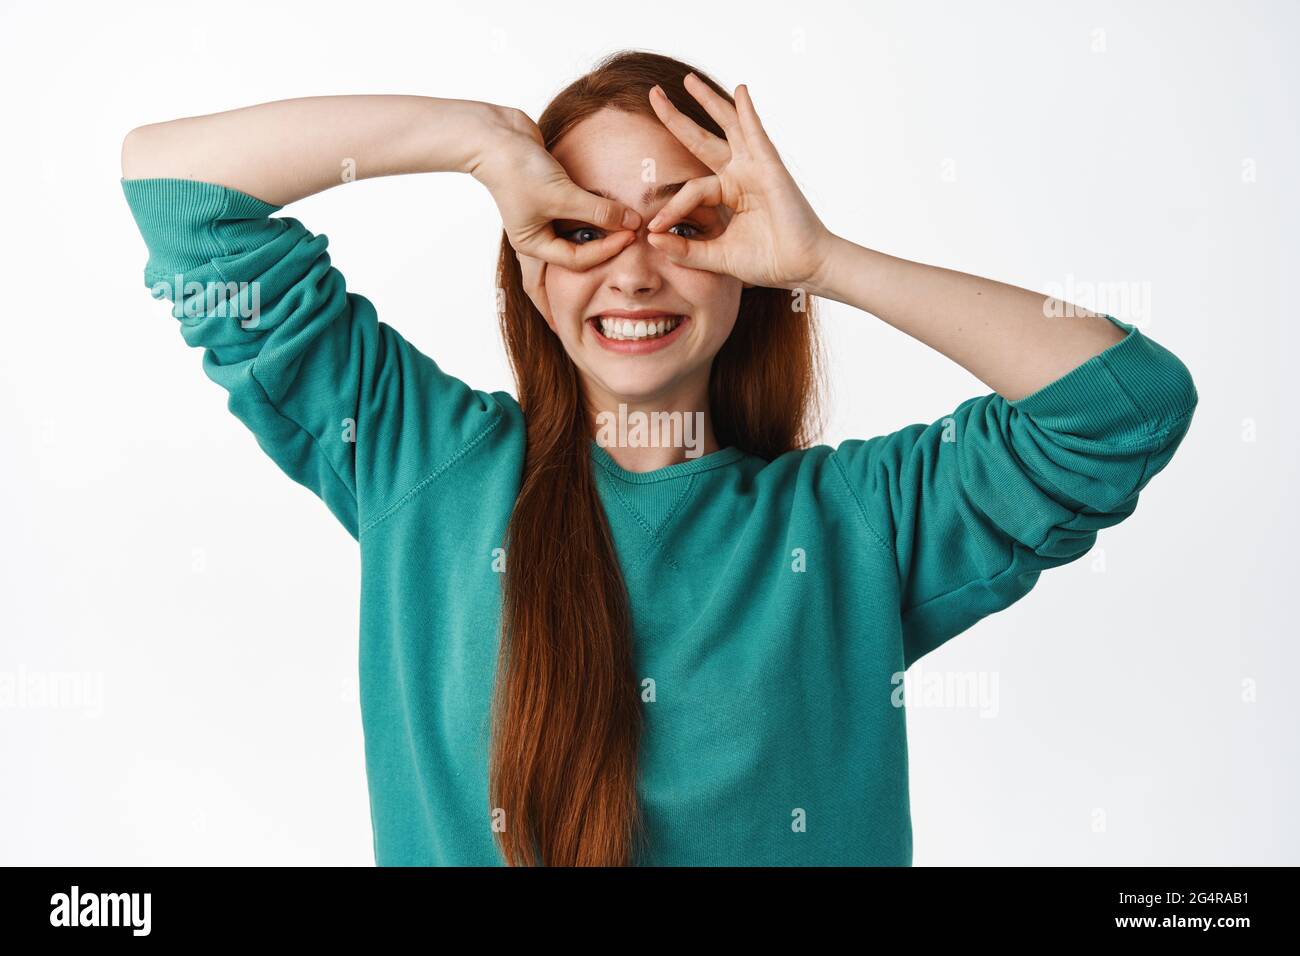 Happy Ingwer Mädchen schaut durch Finger Brille Fernglas, lächelt glücklich  und positiv, macht Superhelden Maske und spielen, über weiß stehen  Stockfotografie - Alamy